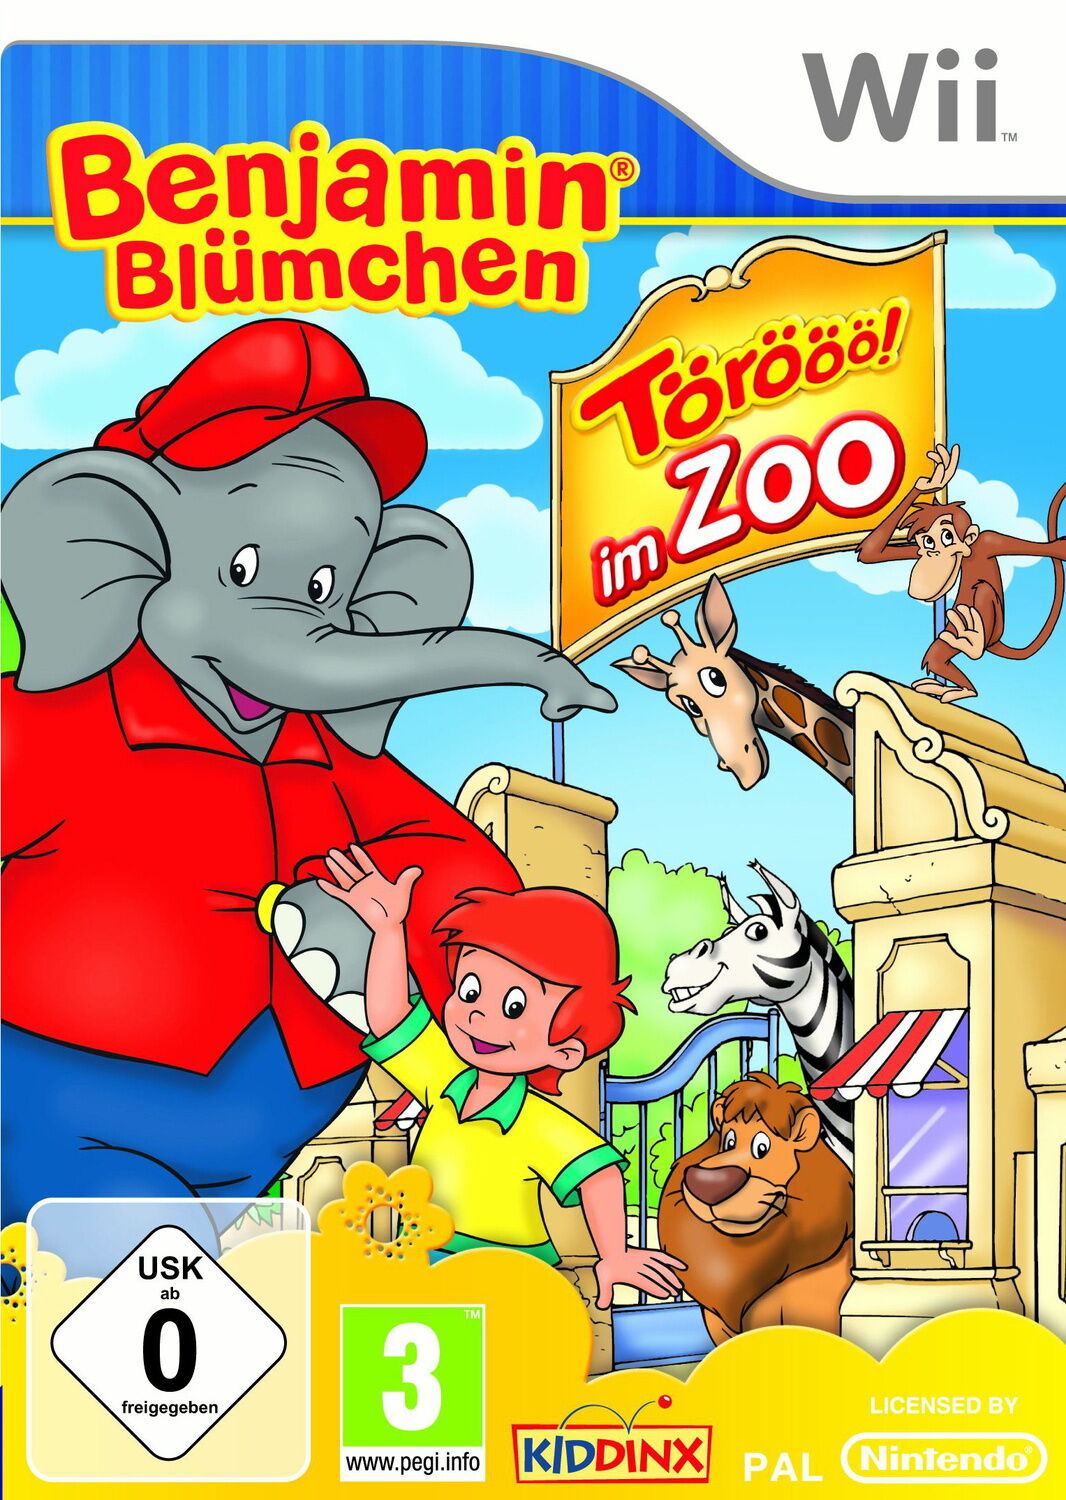 Benjamin Blümchen - Törööö im Zoo